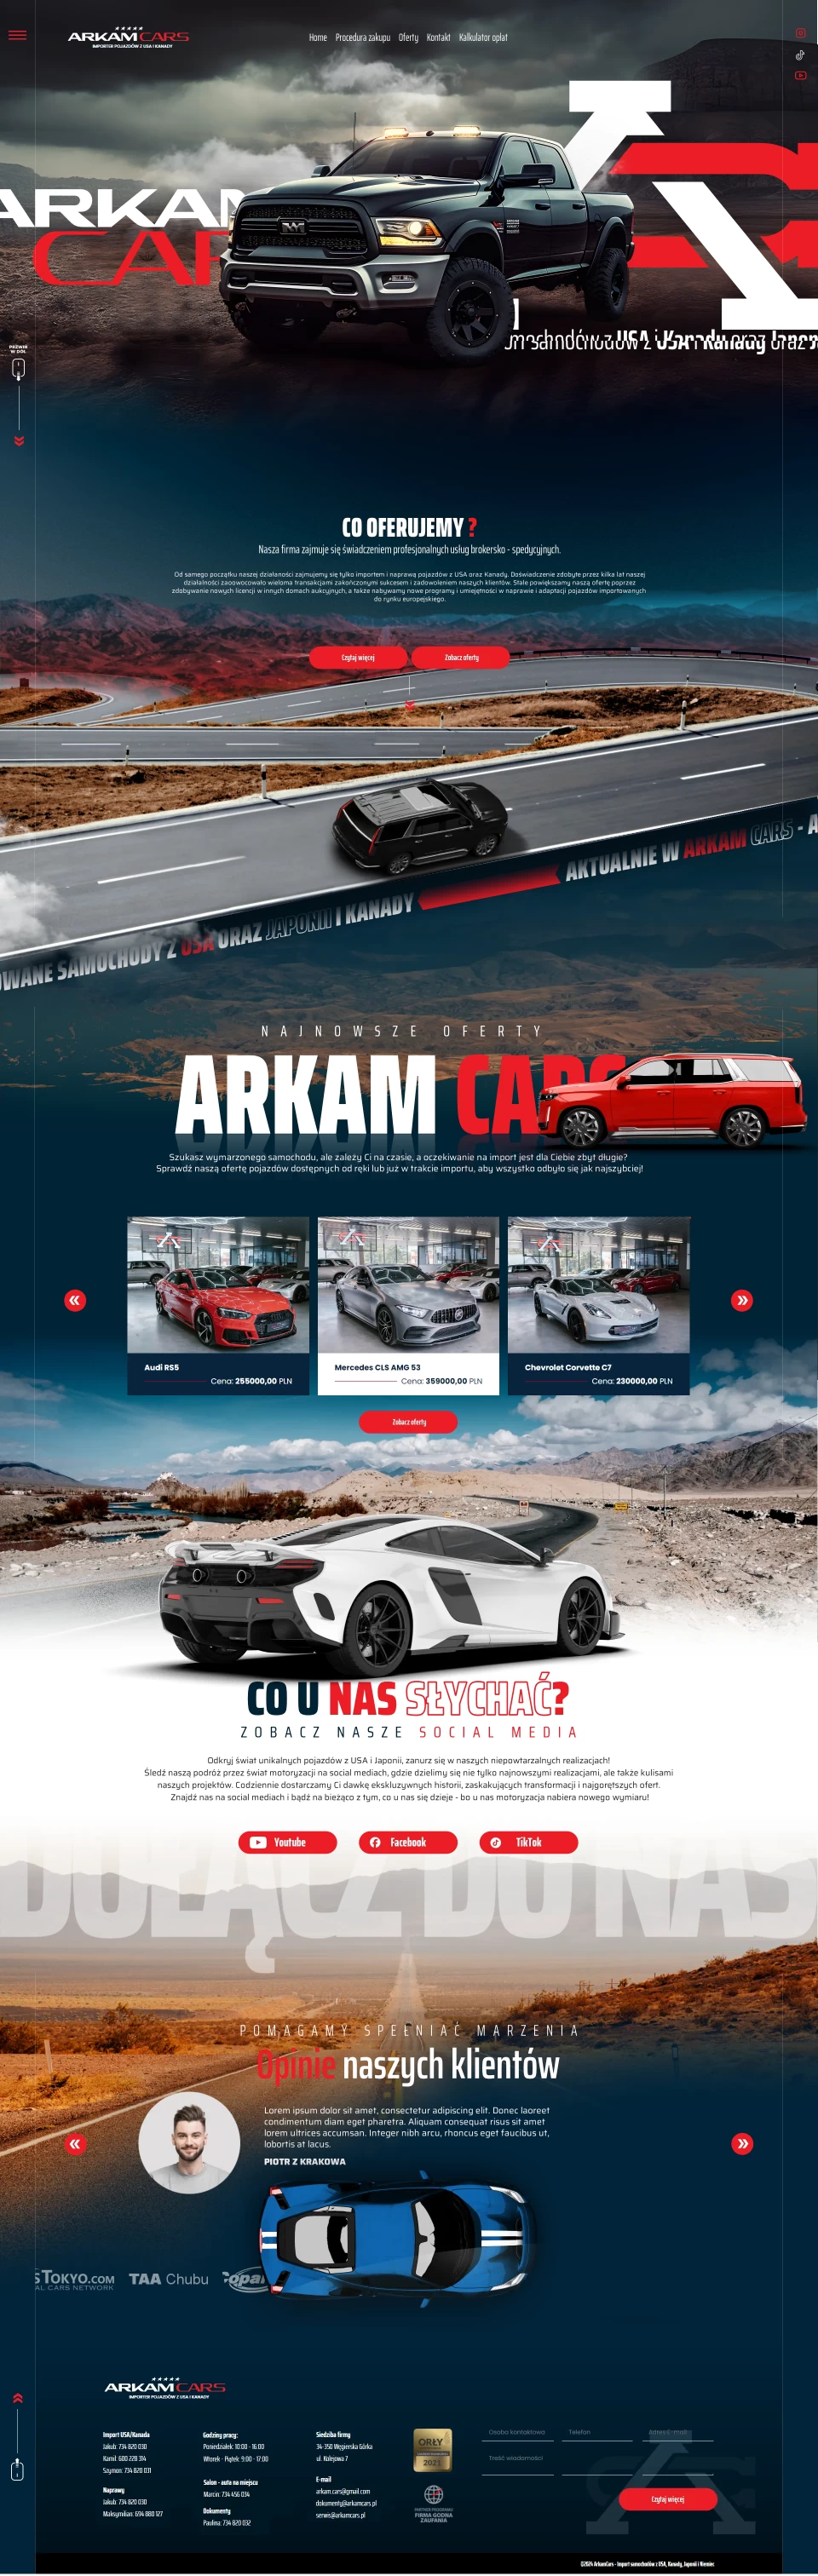 Projektowanie stron itnernetowych - projekt fullpage dla ArkamCars